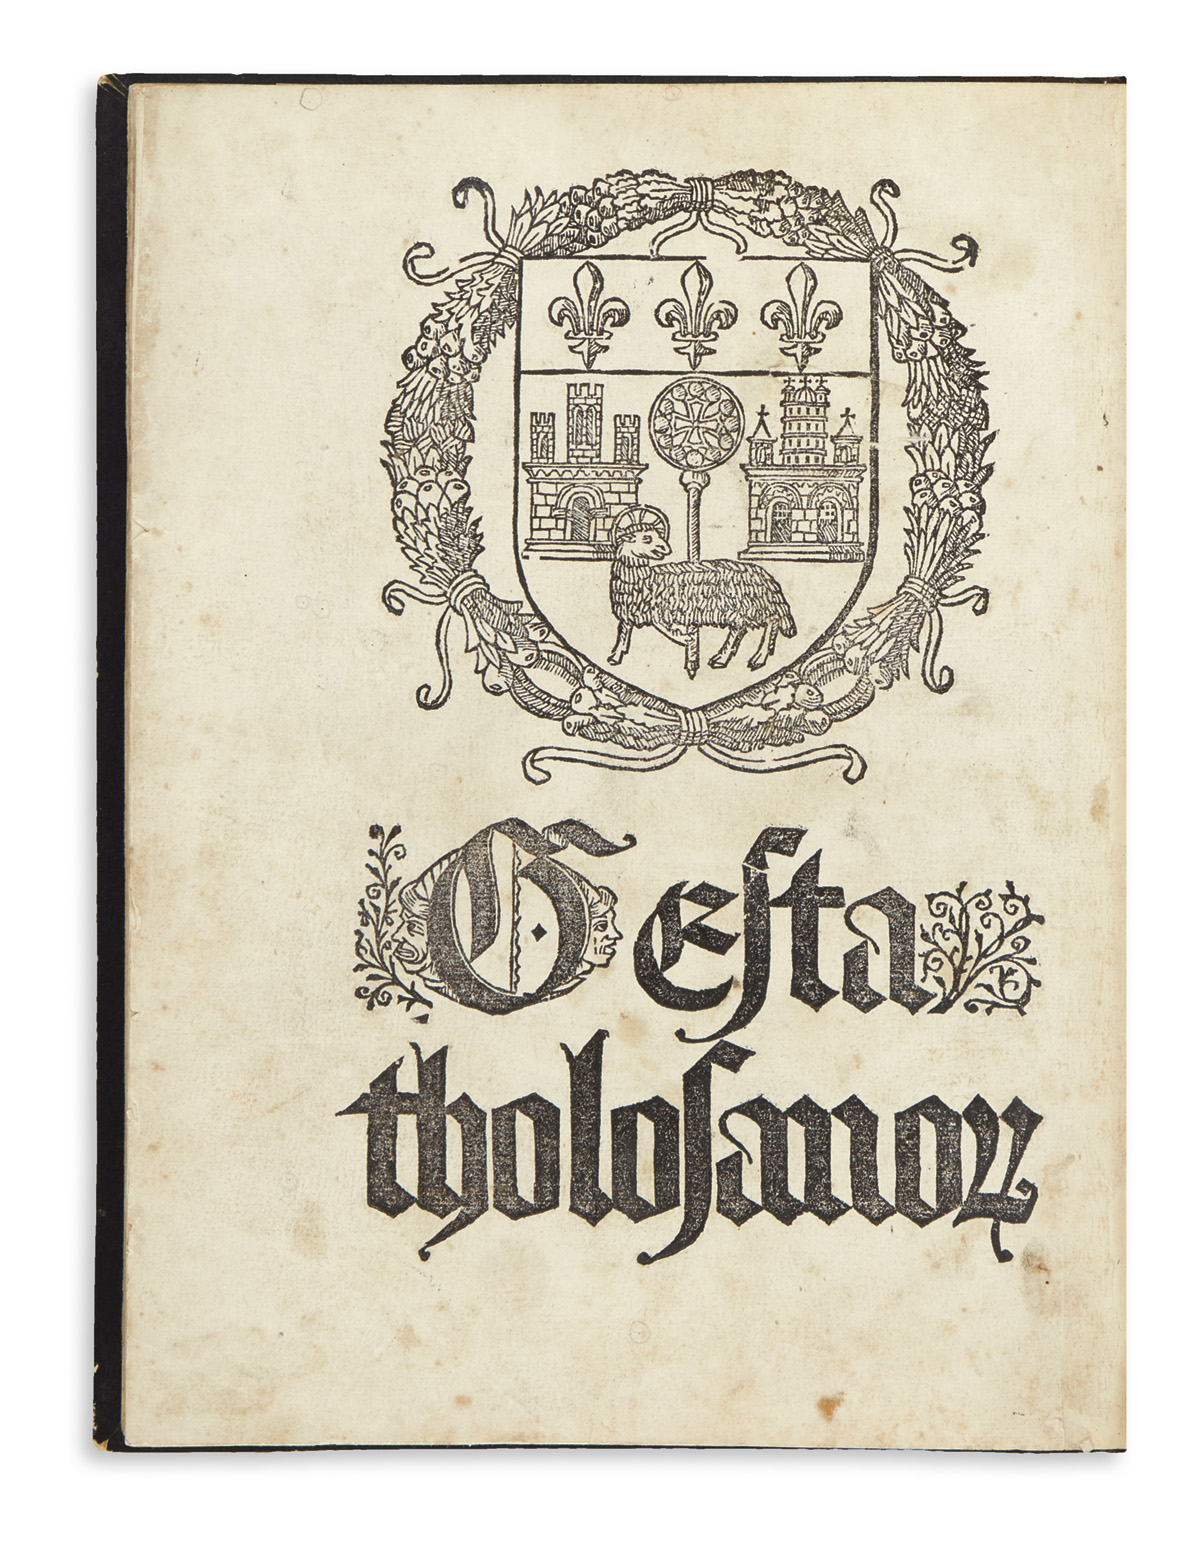 BERTRAND, NICOLAS. Opus de Tholosano[rum] Gestis ab Urbe Condita.  1515